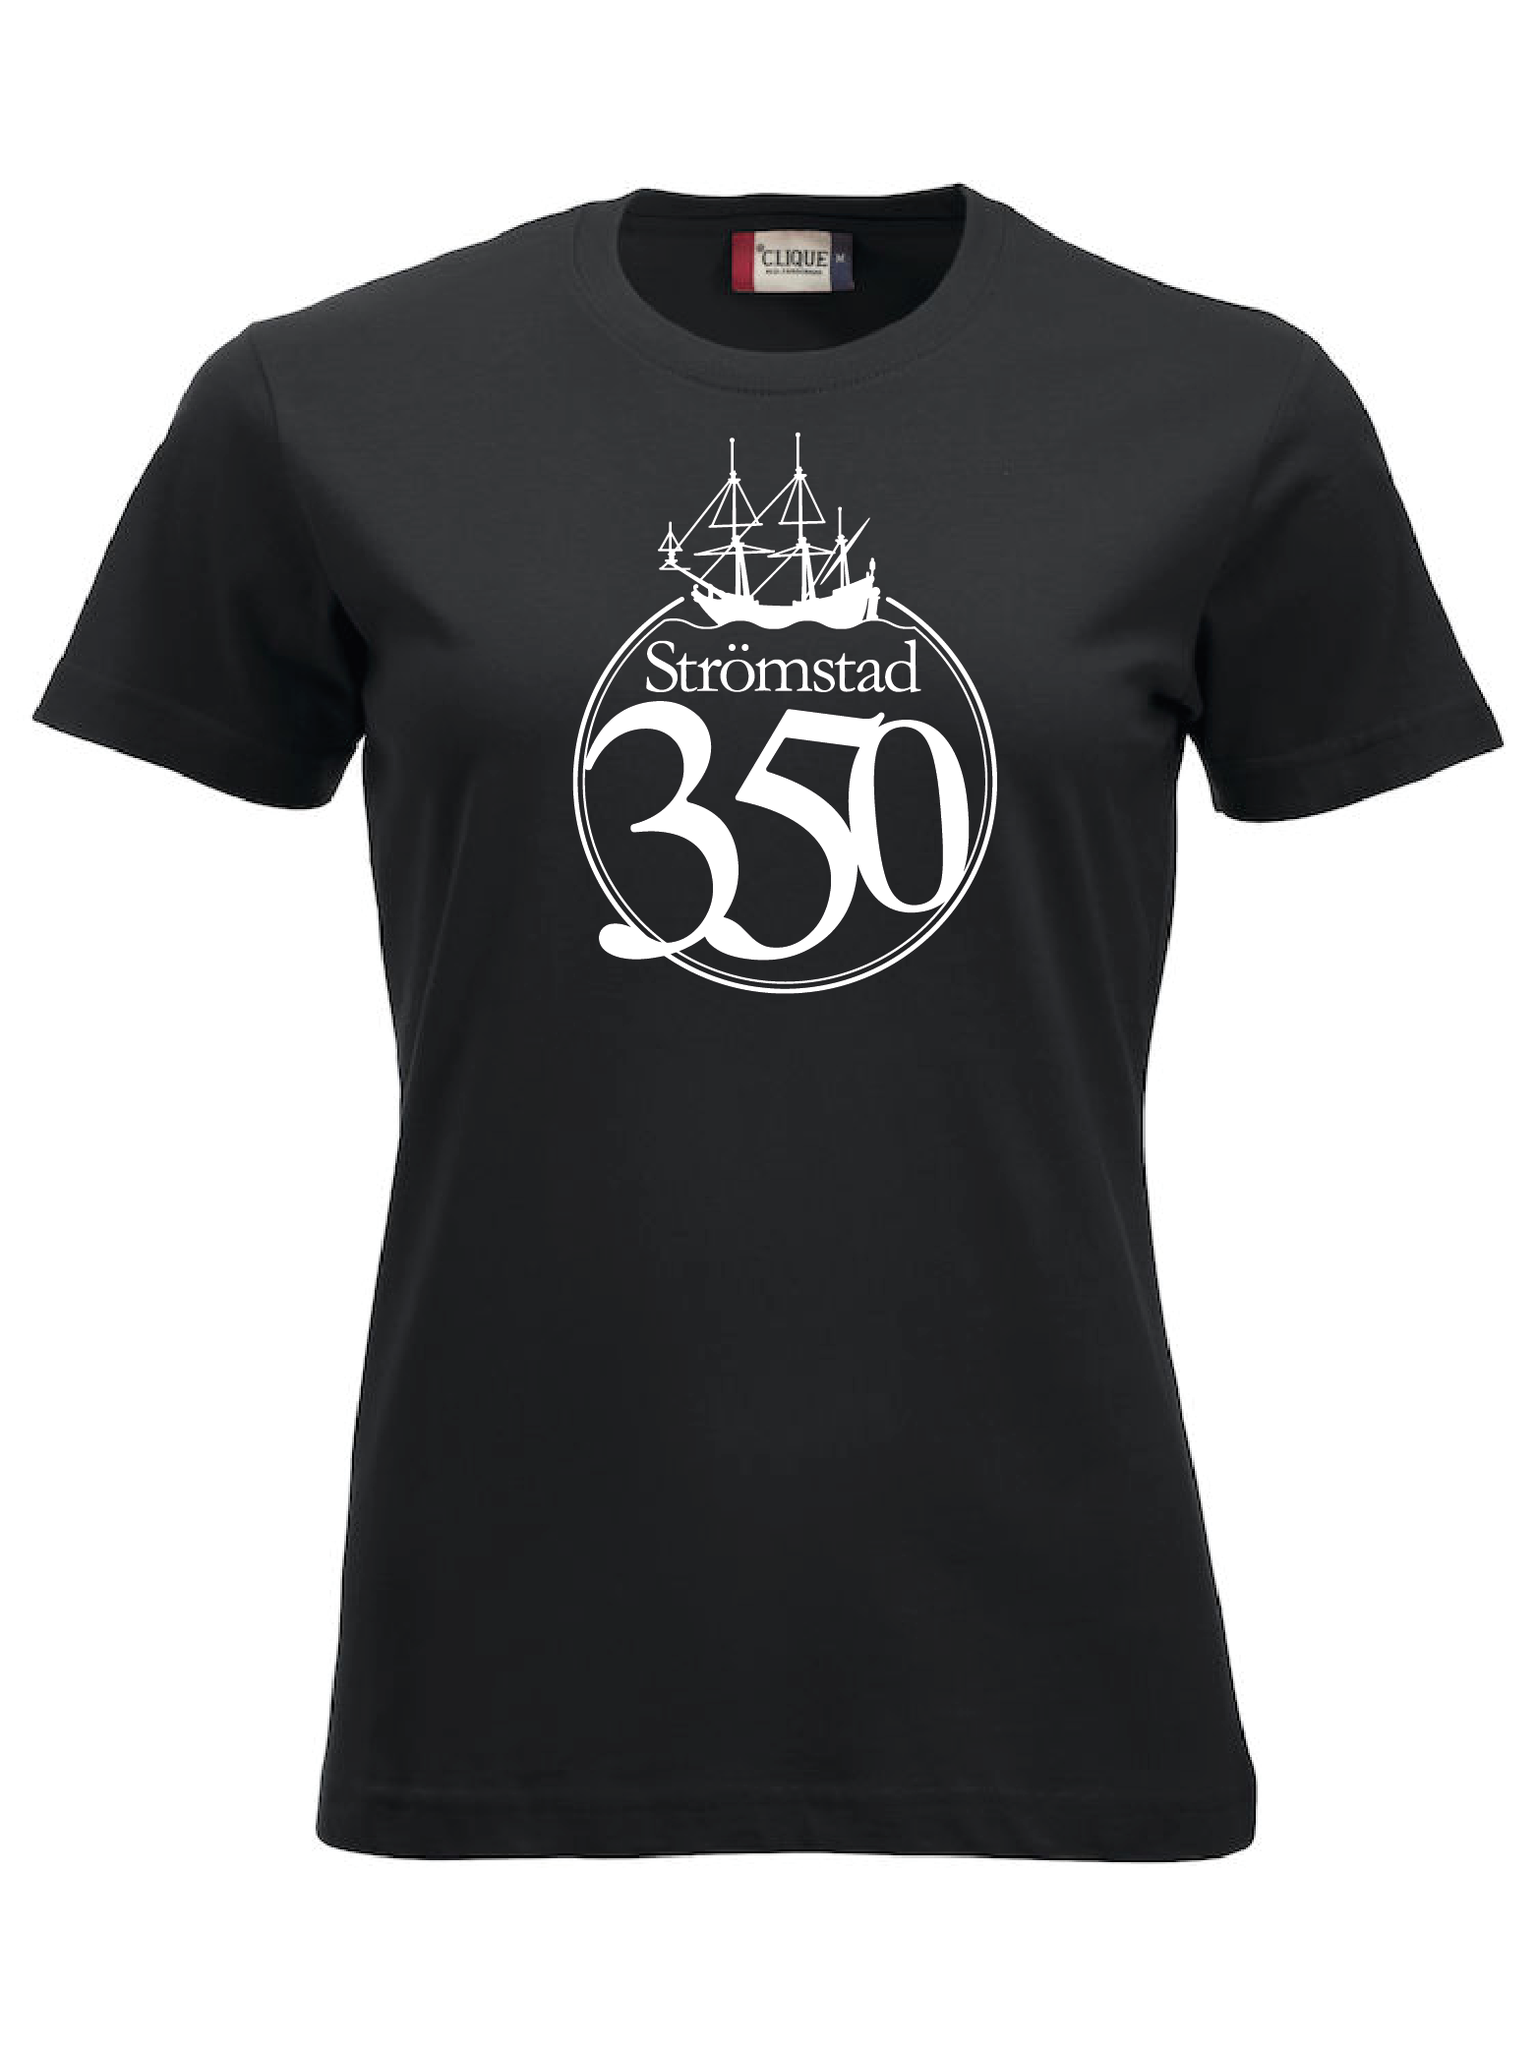 Svart Dam T-shirt "STRÖMSTAD 350 år"